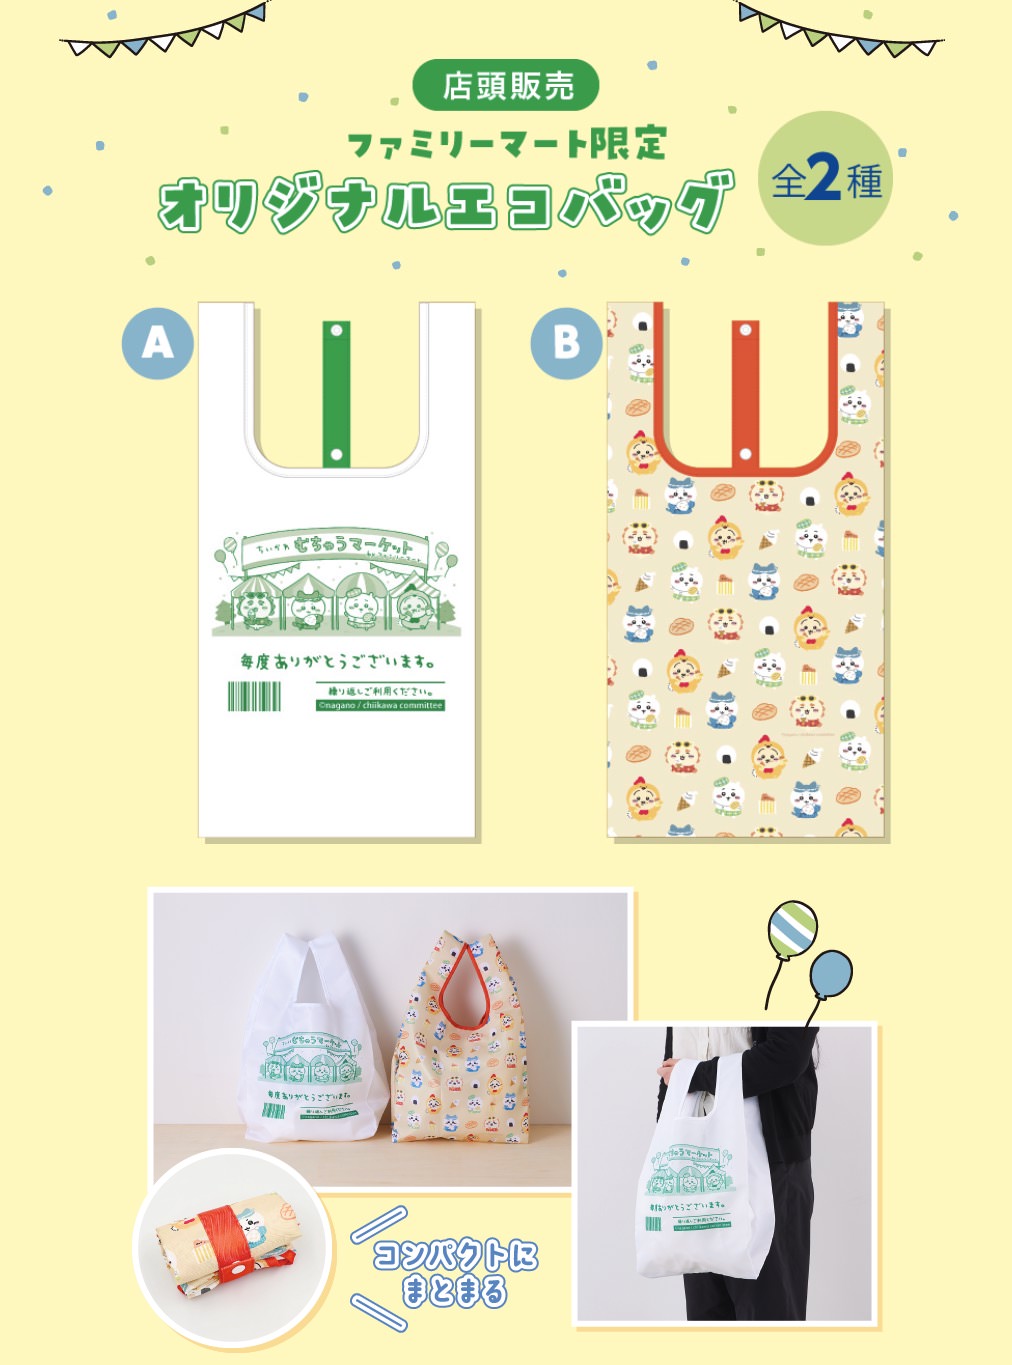 ちいかわ × ファミリーマート 5月26日よりファミマ限定エコバッグ発売!